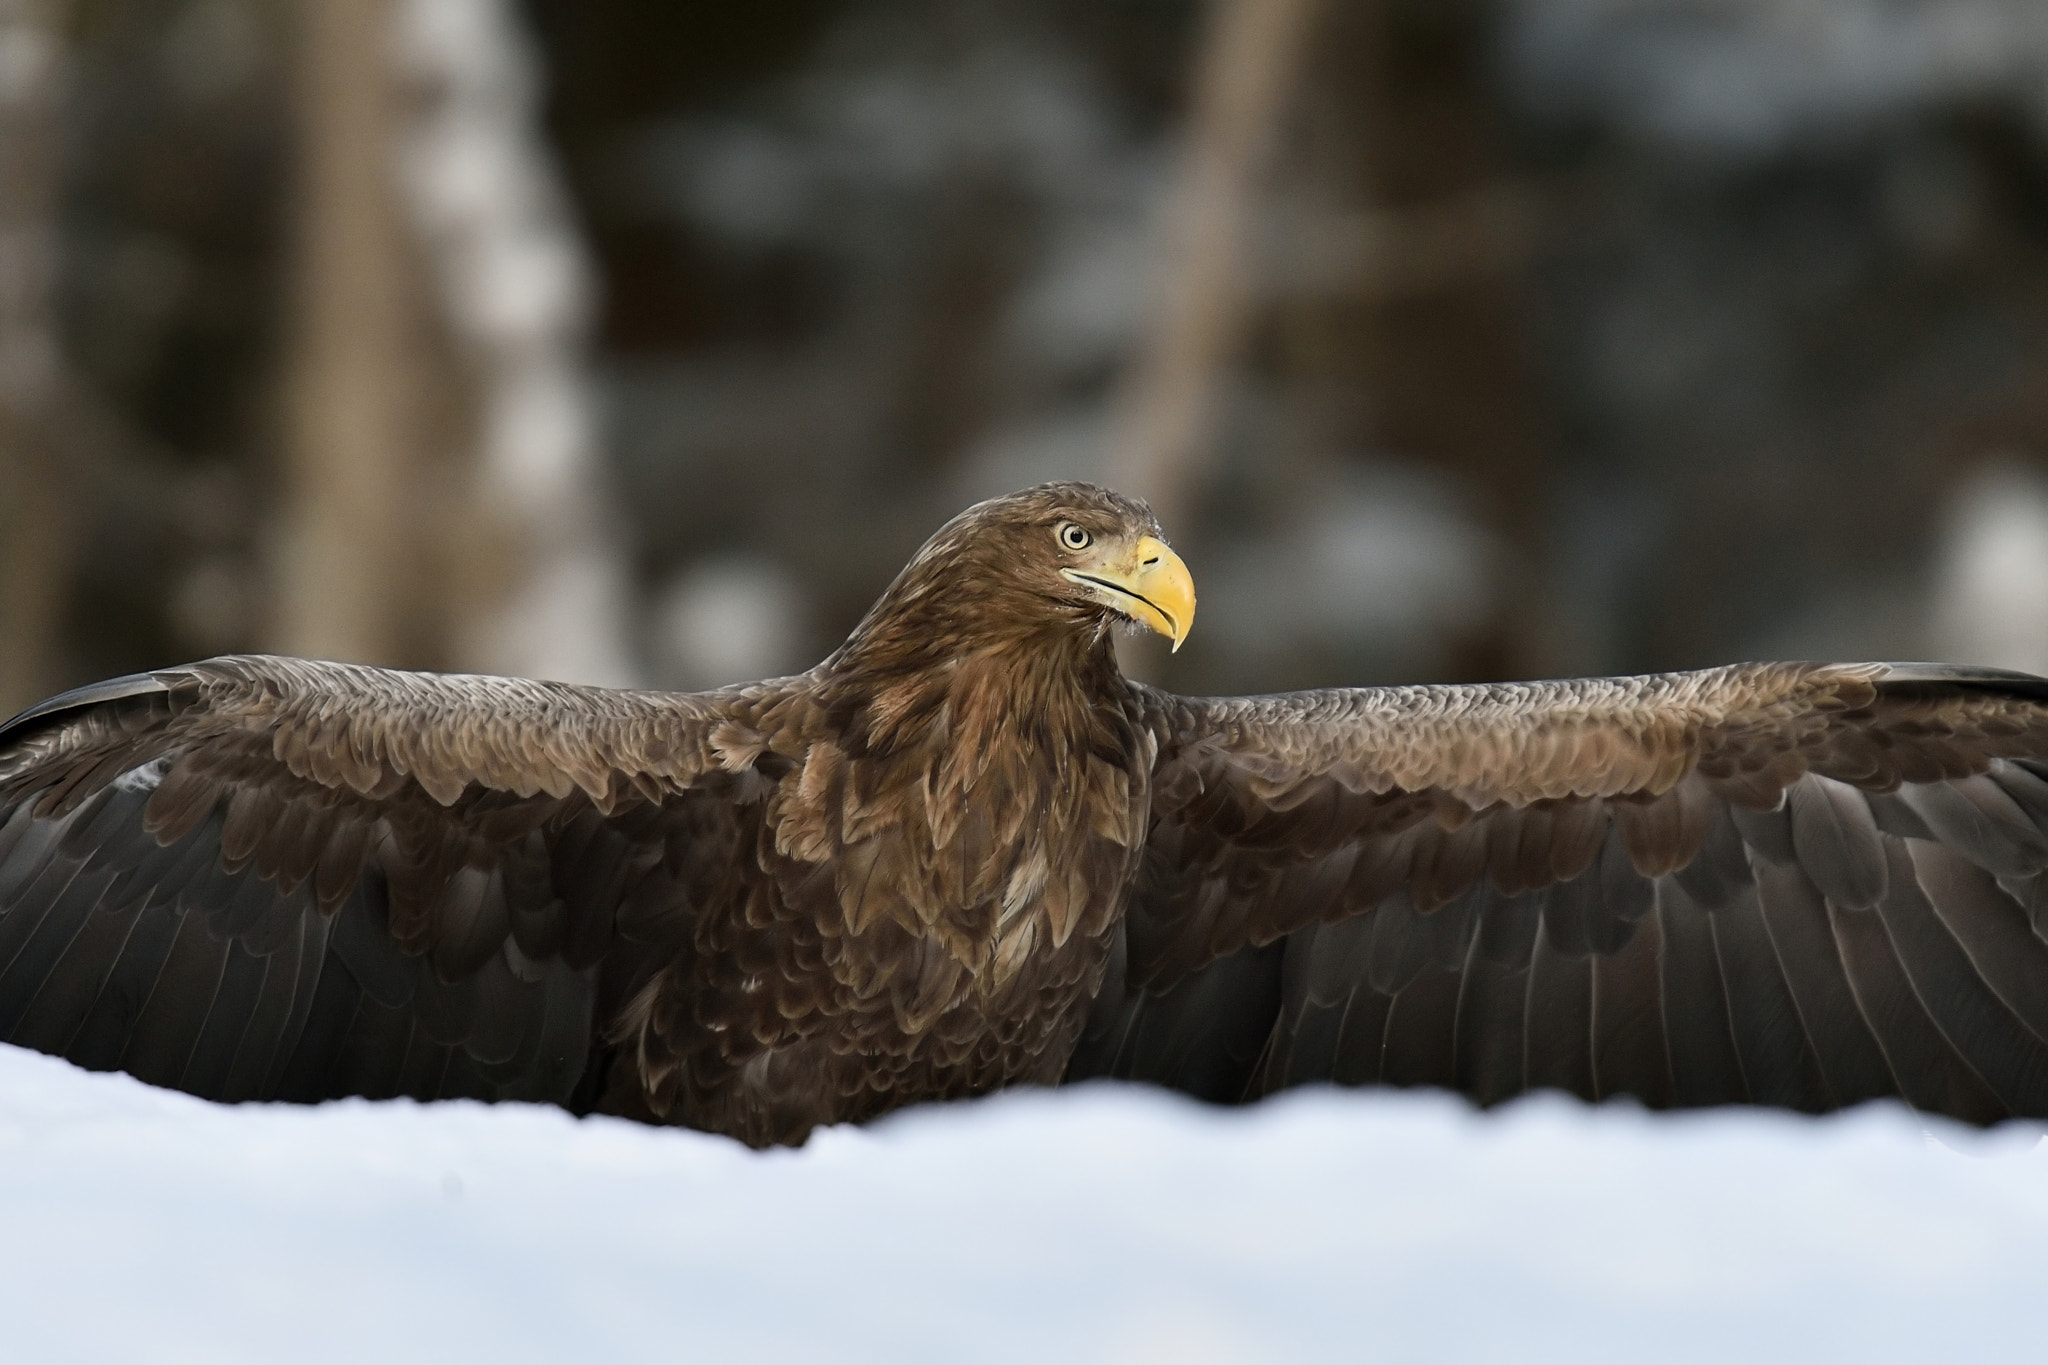 Nikon AF-S Nikkor 400mm F2.8G ED VR II sample photo. Royal eagle wingspread on snow photography